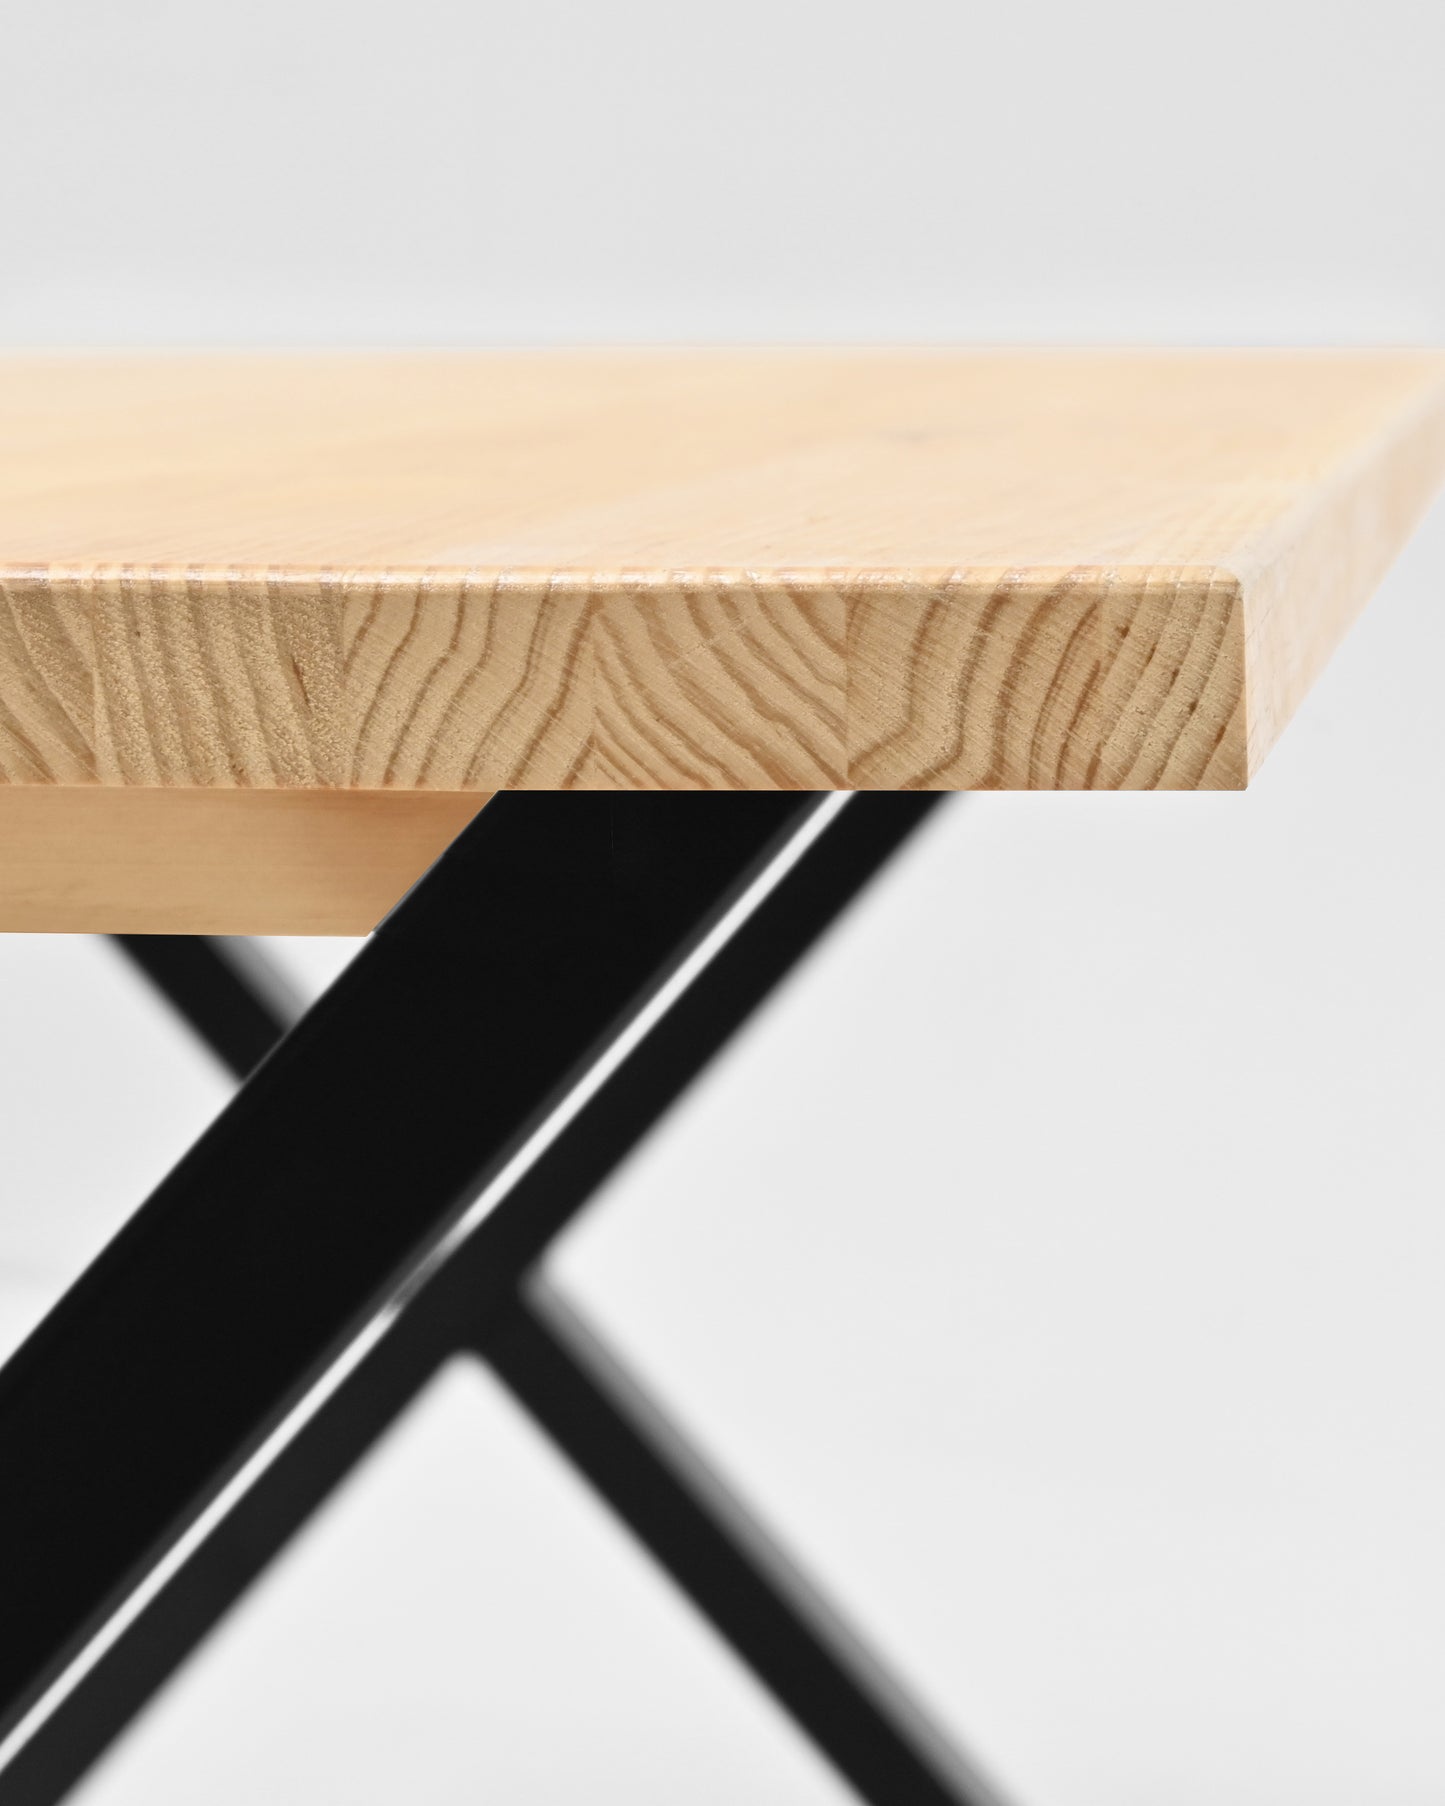 Mesa de comedor de madera maciza natural patas negras 120x80cm - DECOWOOD